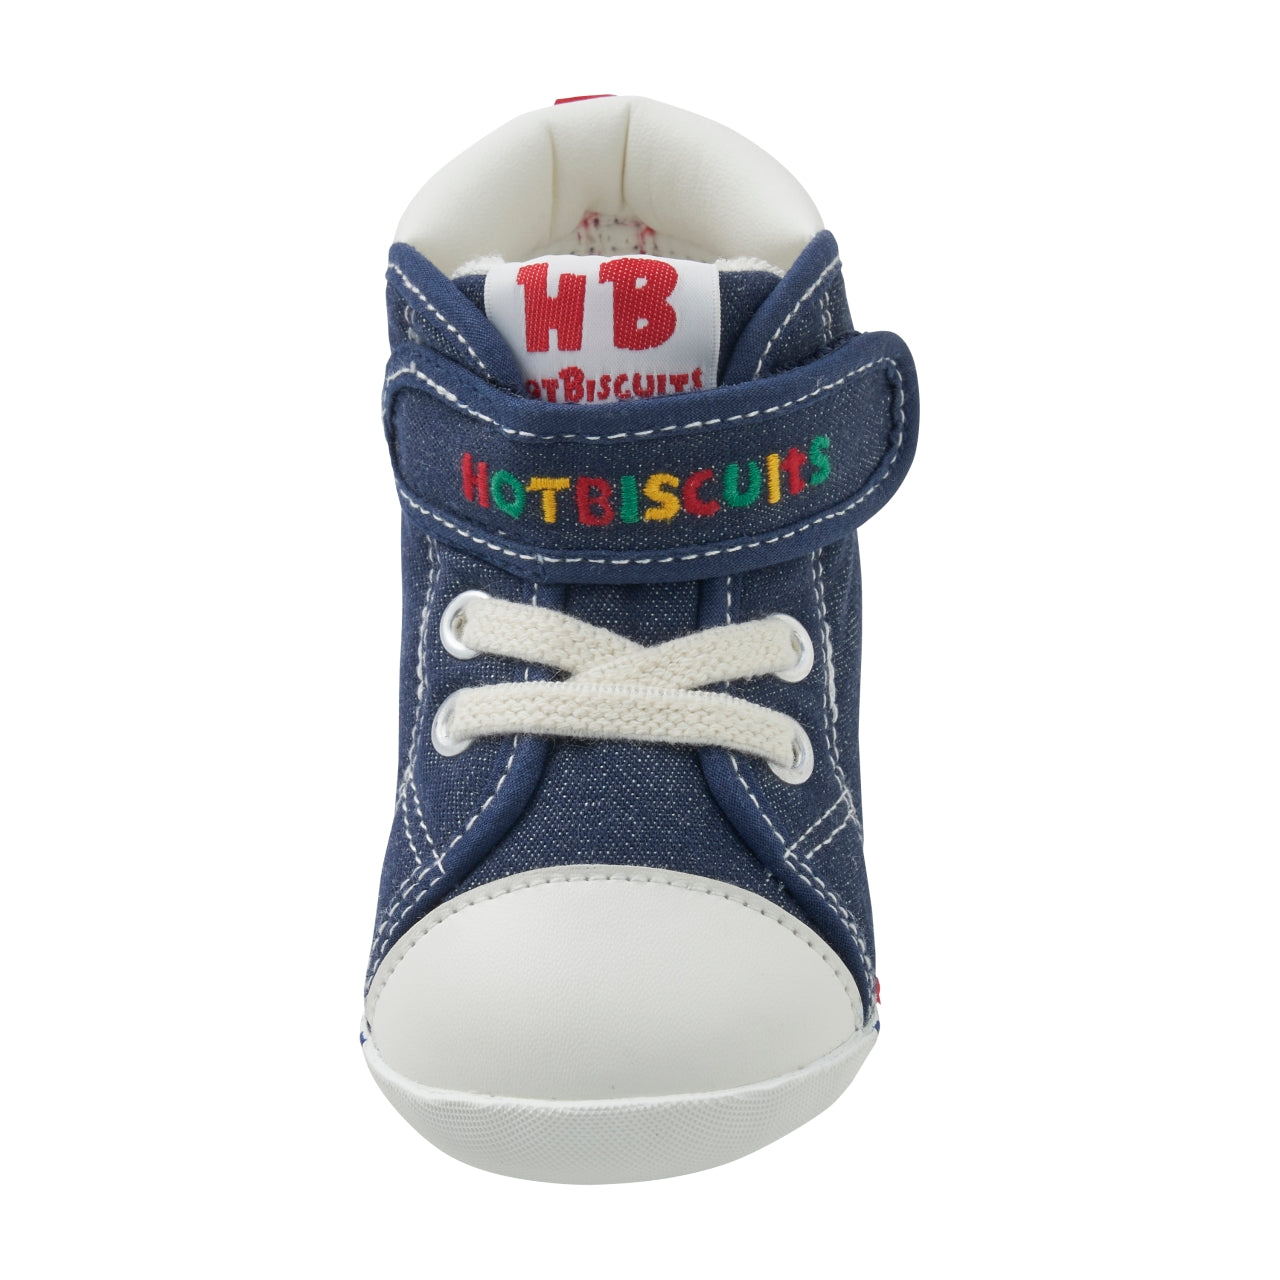 HB-Denim Beans First Walker Shoes